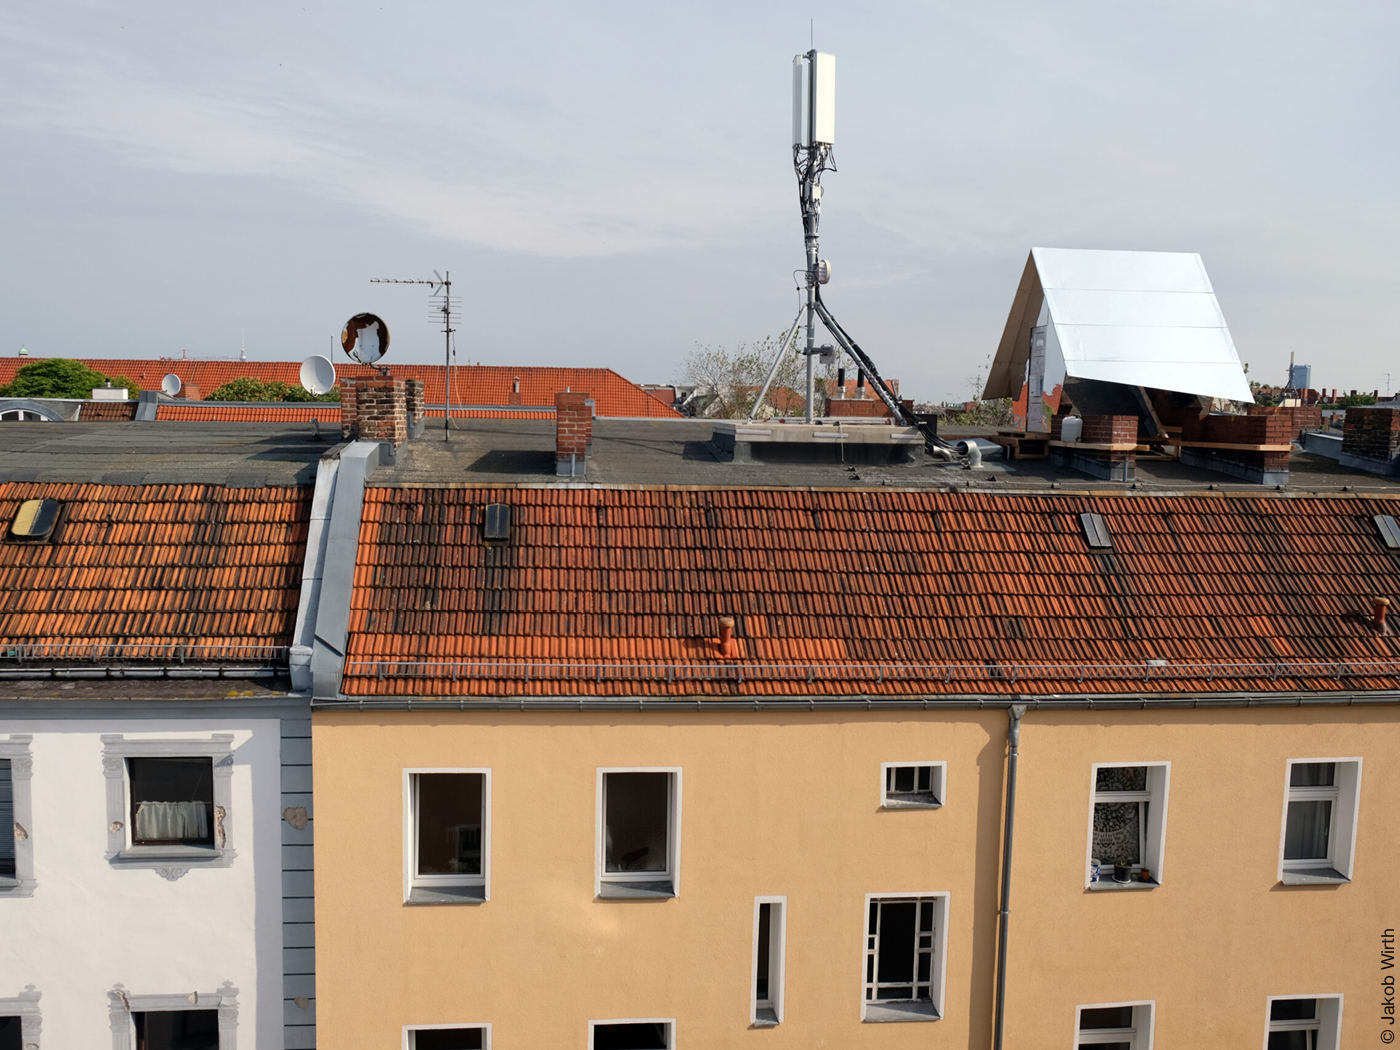 Verspiegeltes Tiny House auf einem Hausdach neben Mobilfunkantenne